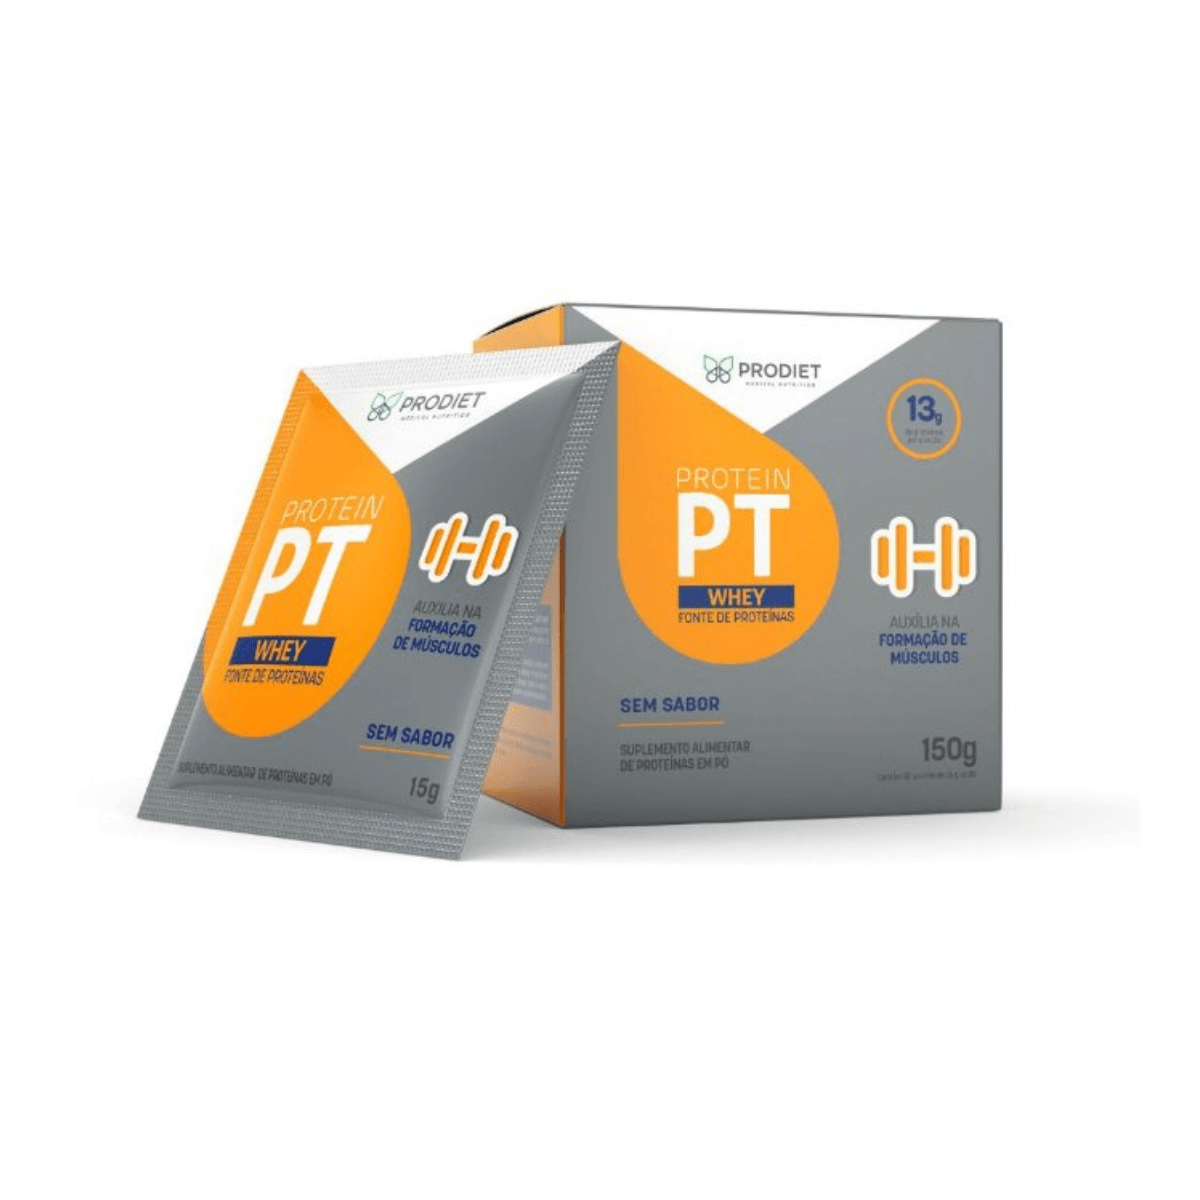 Protein PT Whey - Sachê 15g - Prodiet